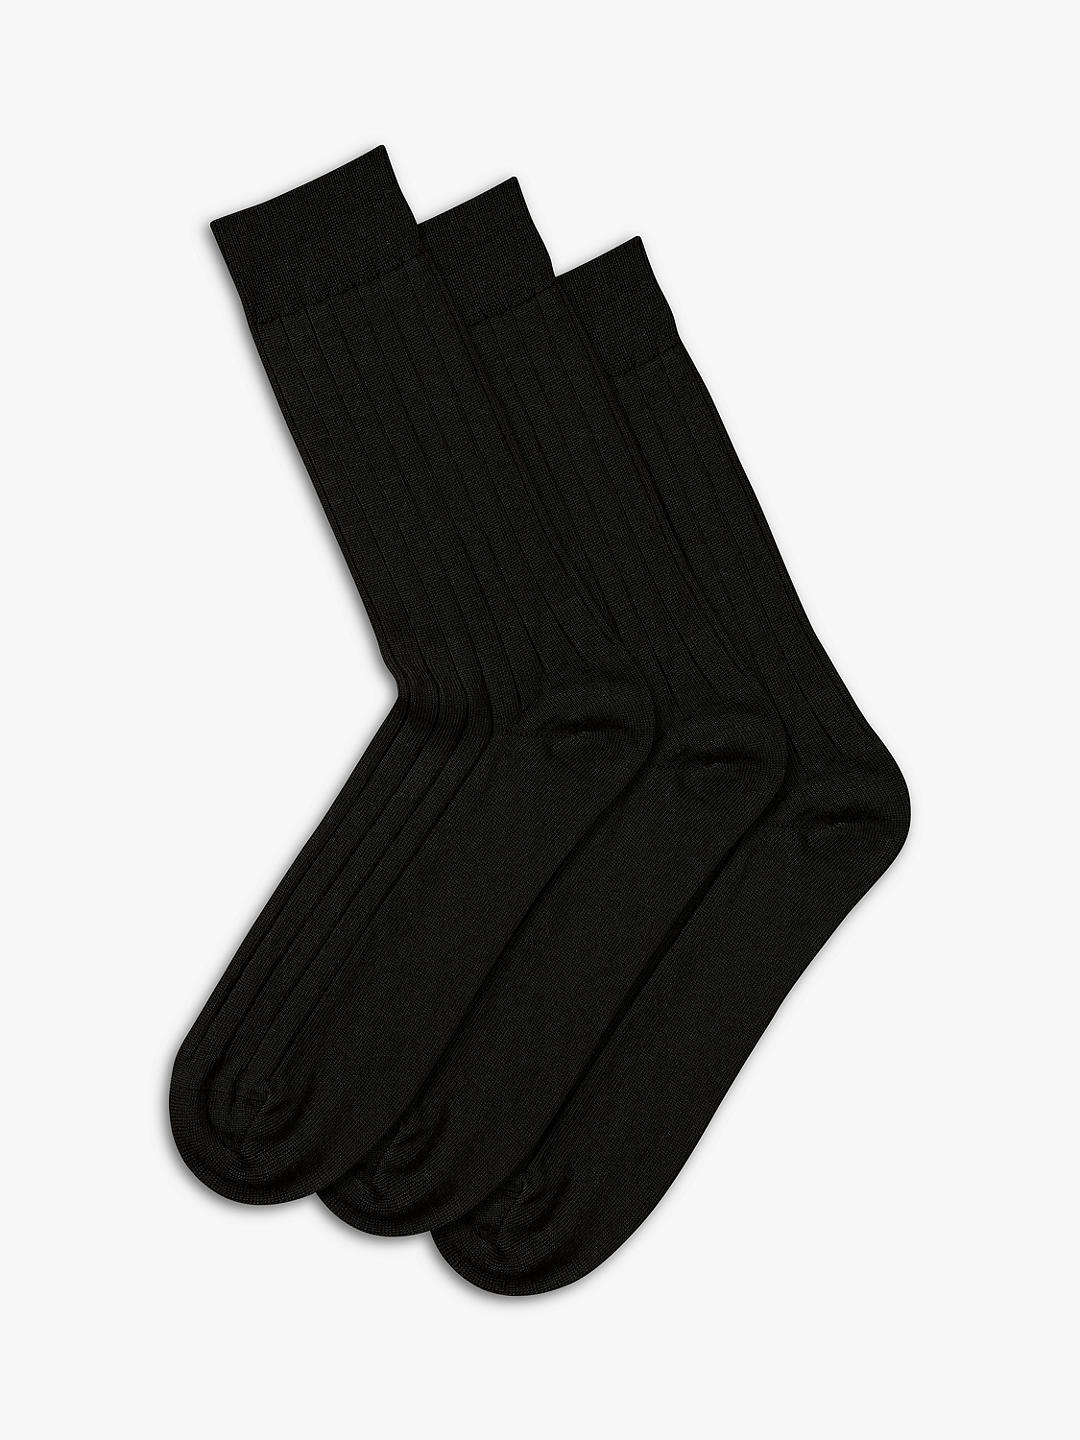 Charles Tyrwhitt Wool Rich Socks, Pack of 3, Black